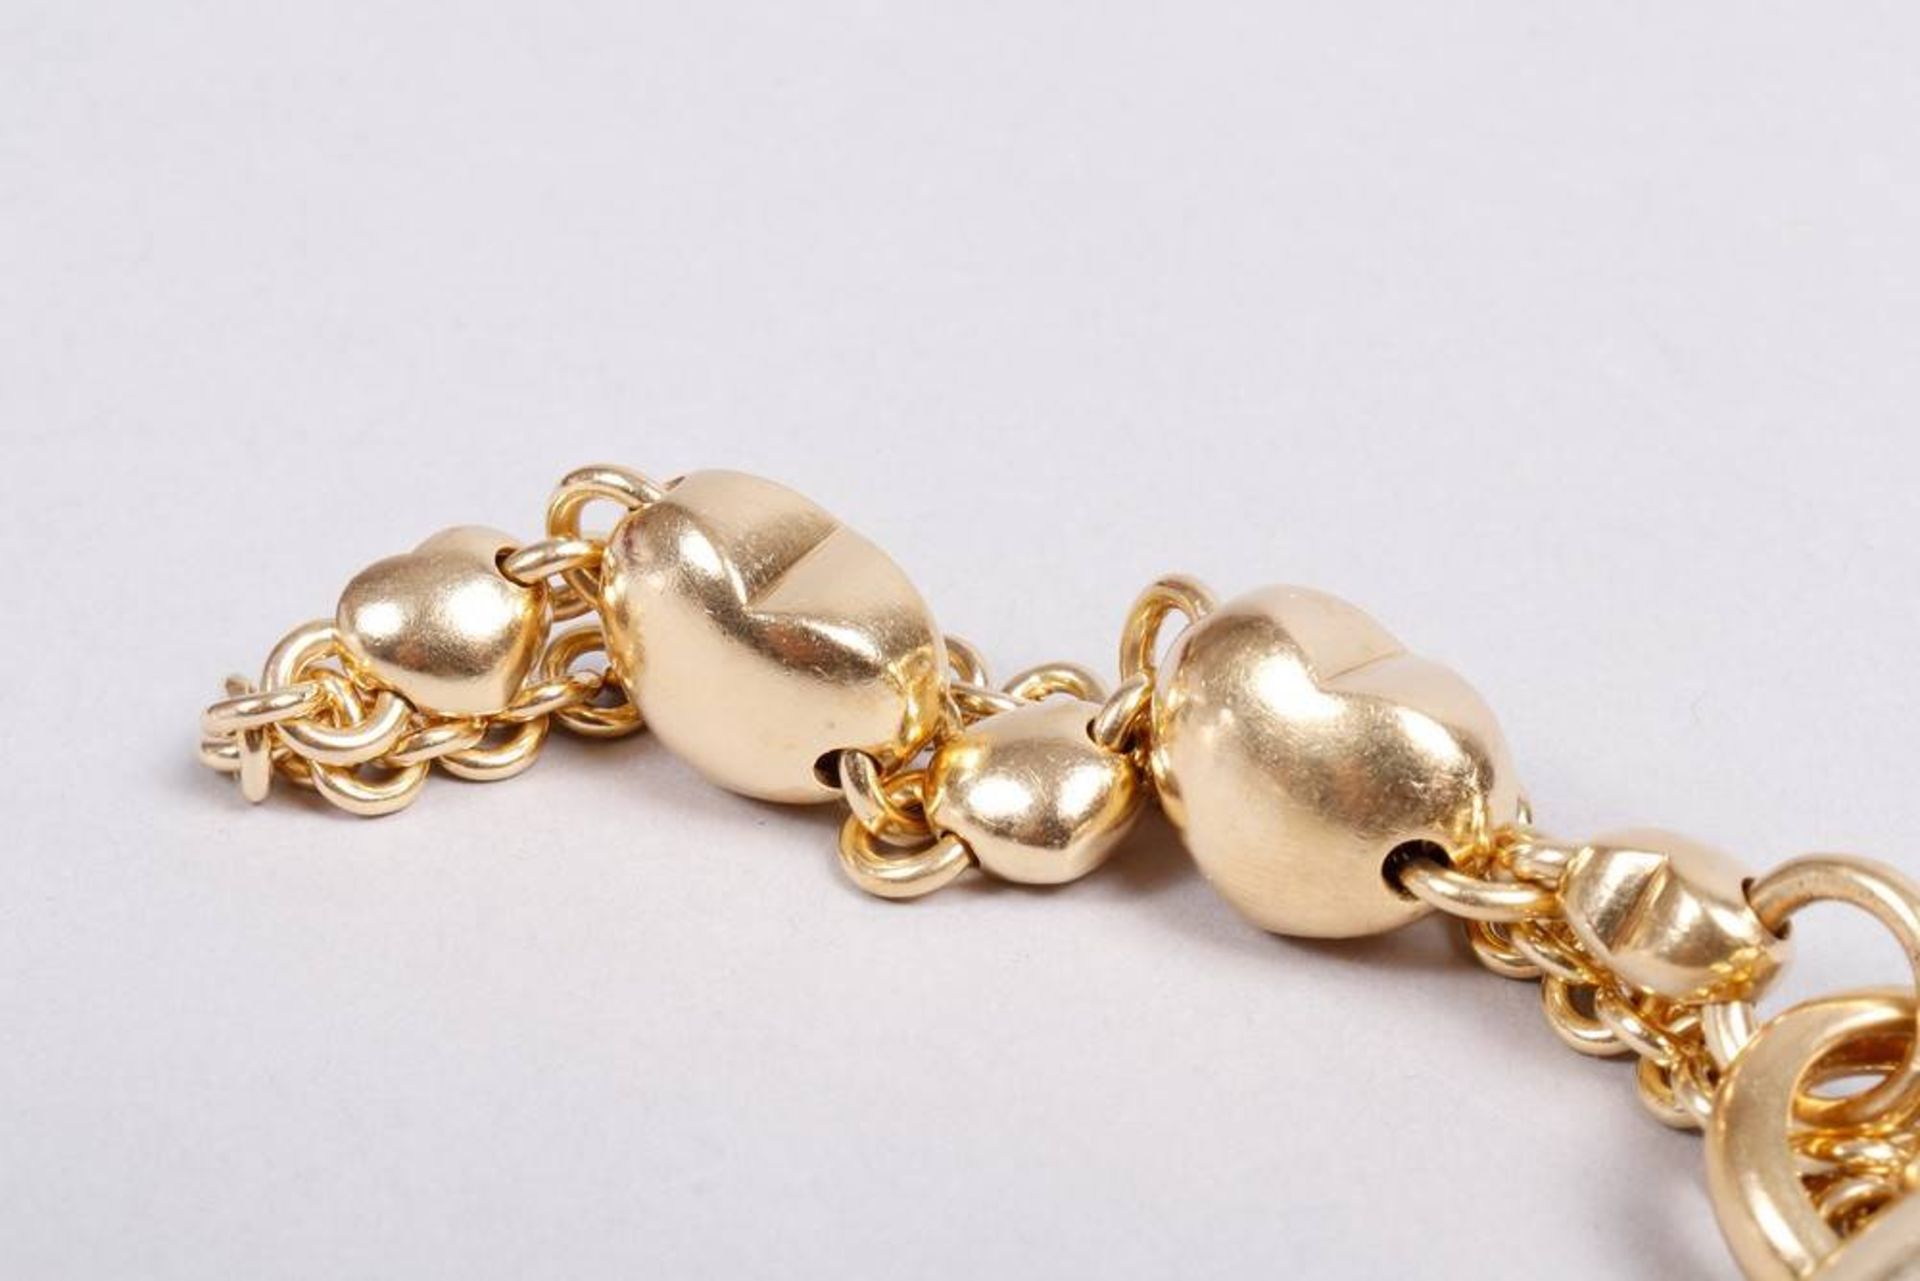 Solid gold bracelet, 750 gold, manufacturer Leopatra - Image 3 of 4